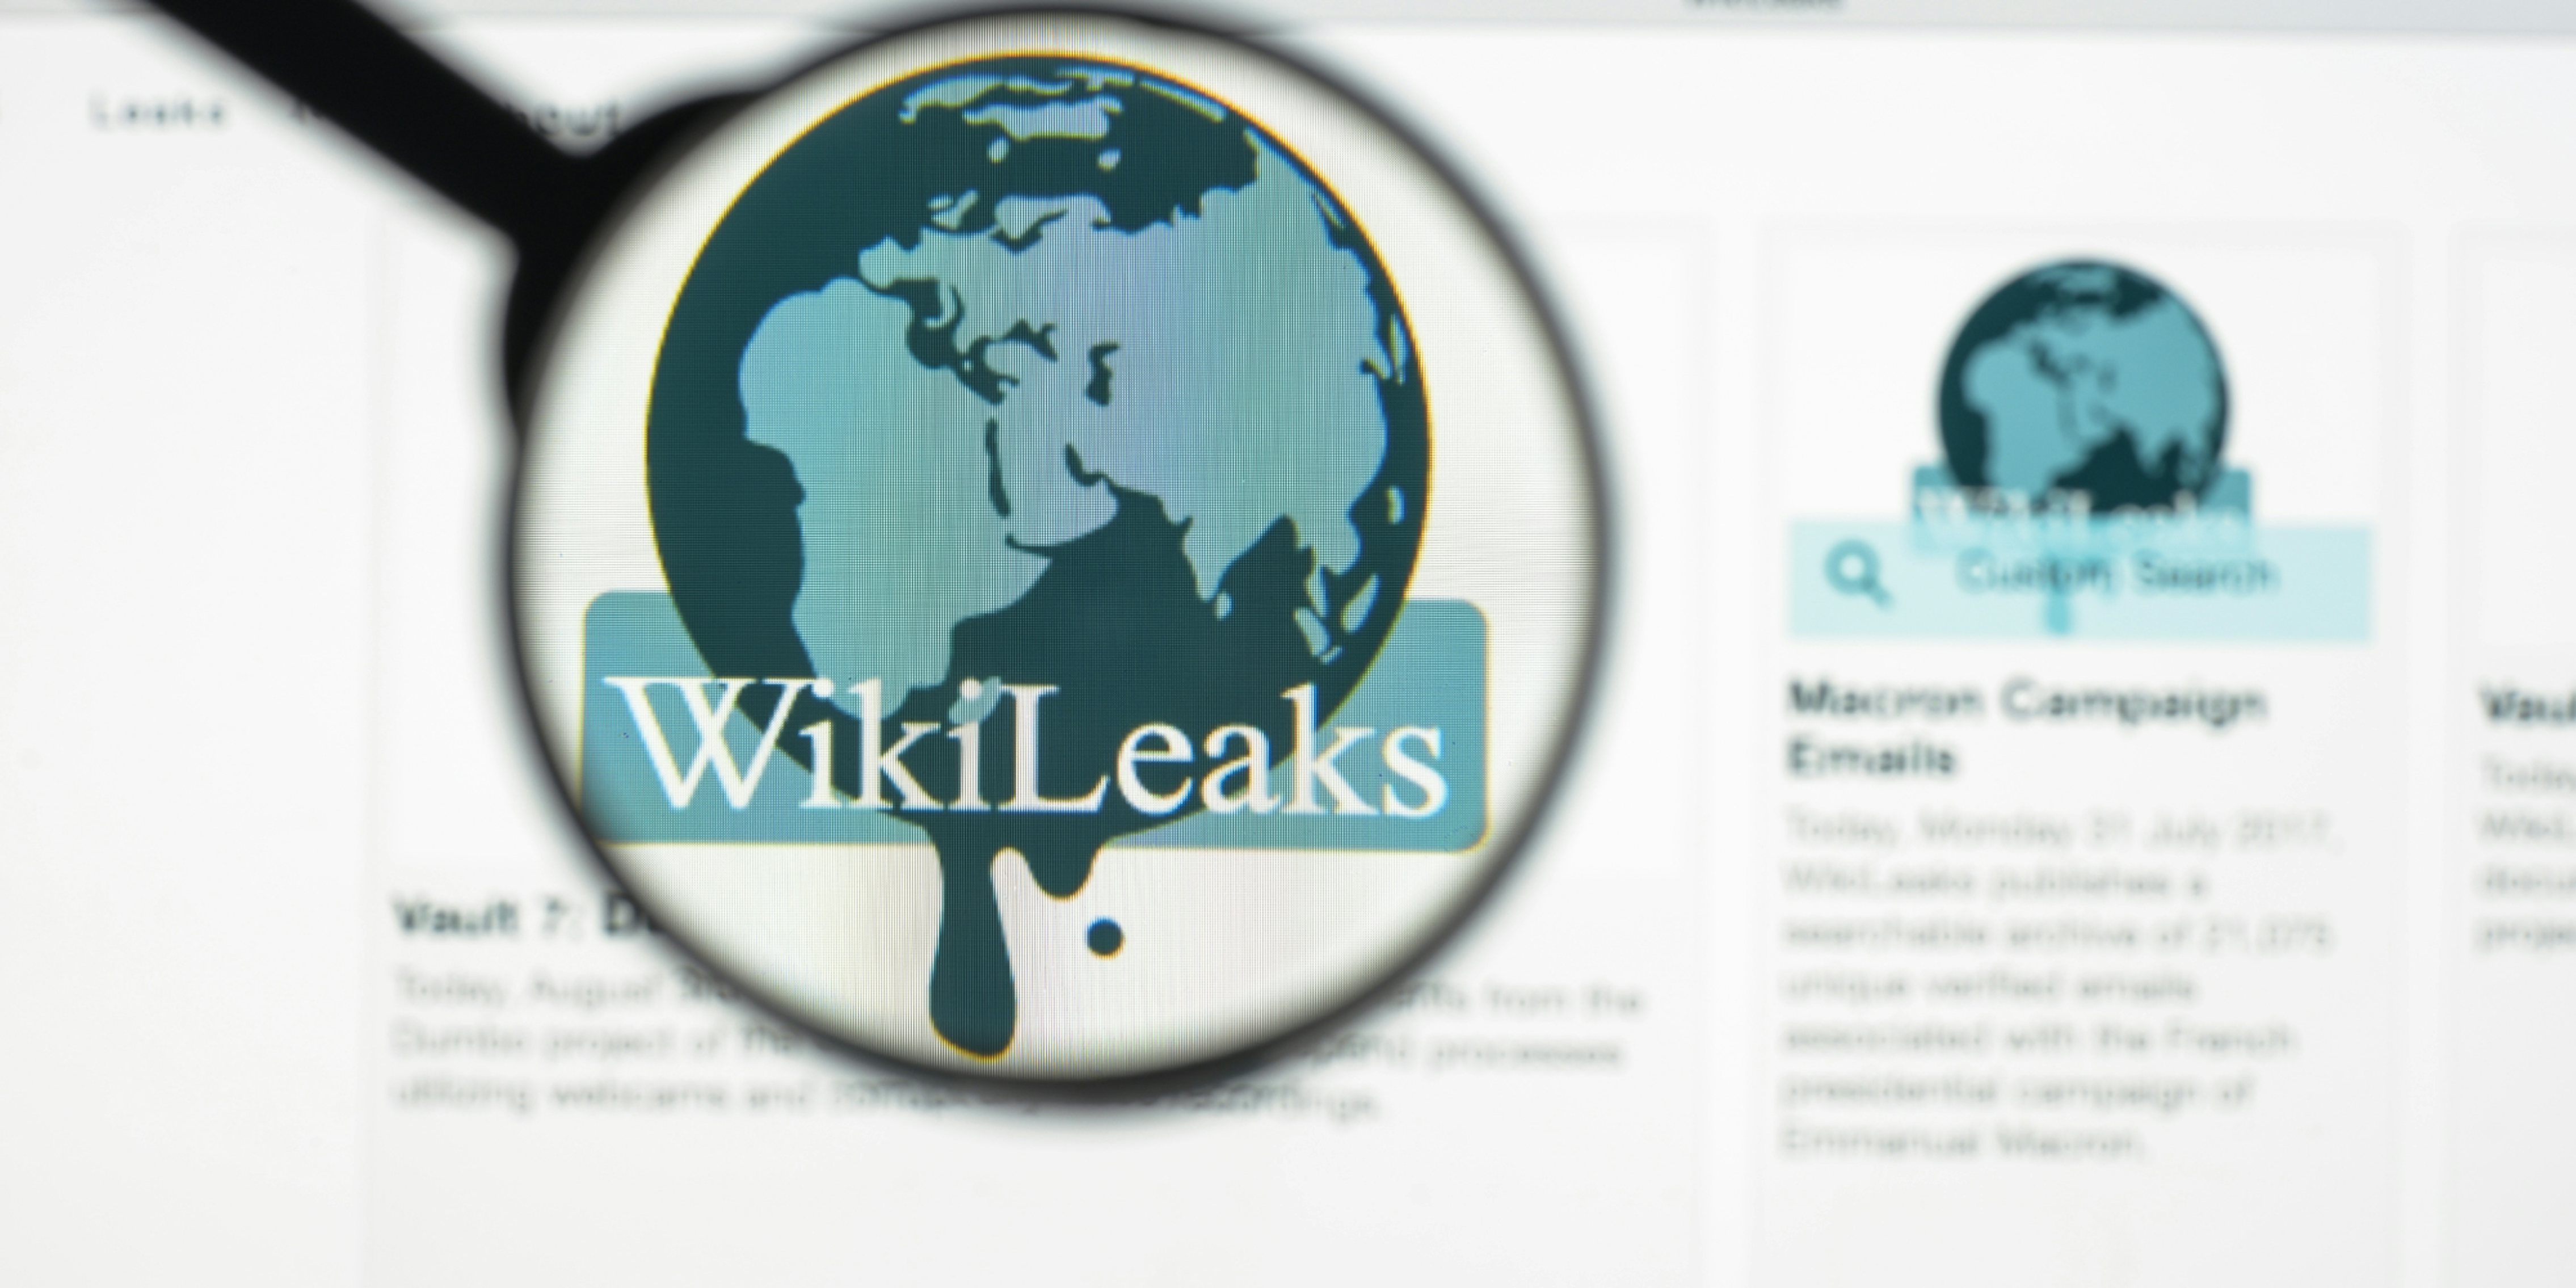 wikileaks logo under a microscope